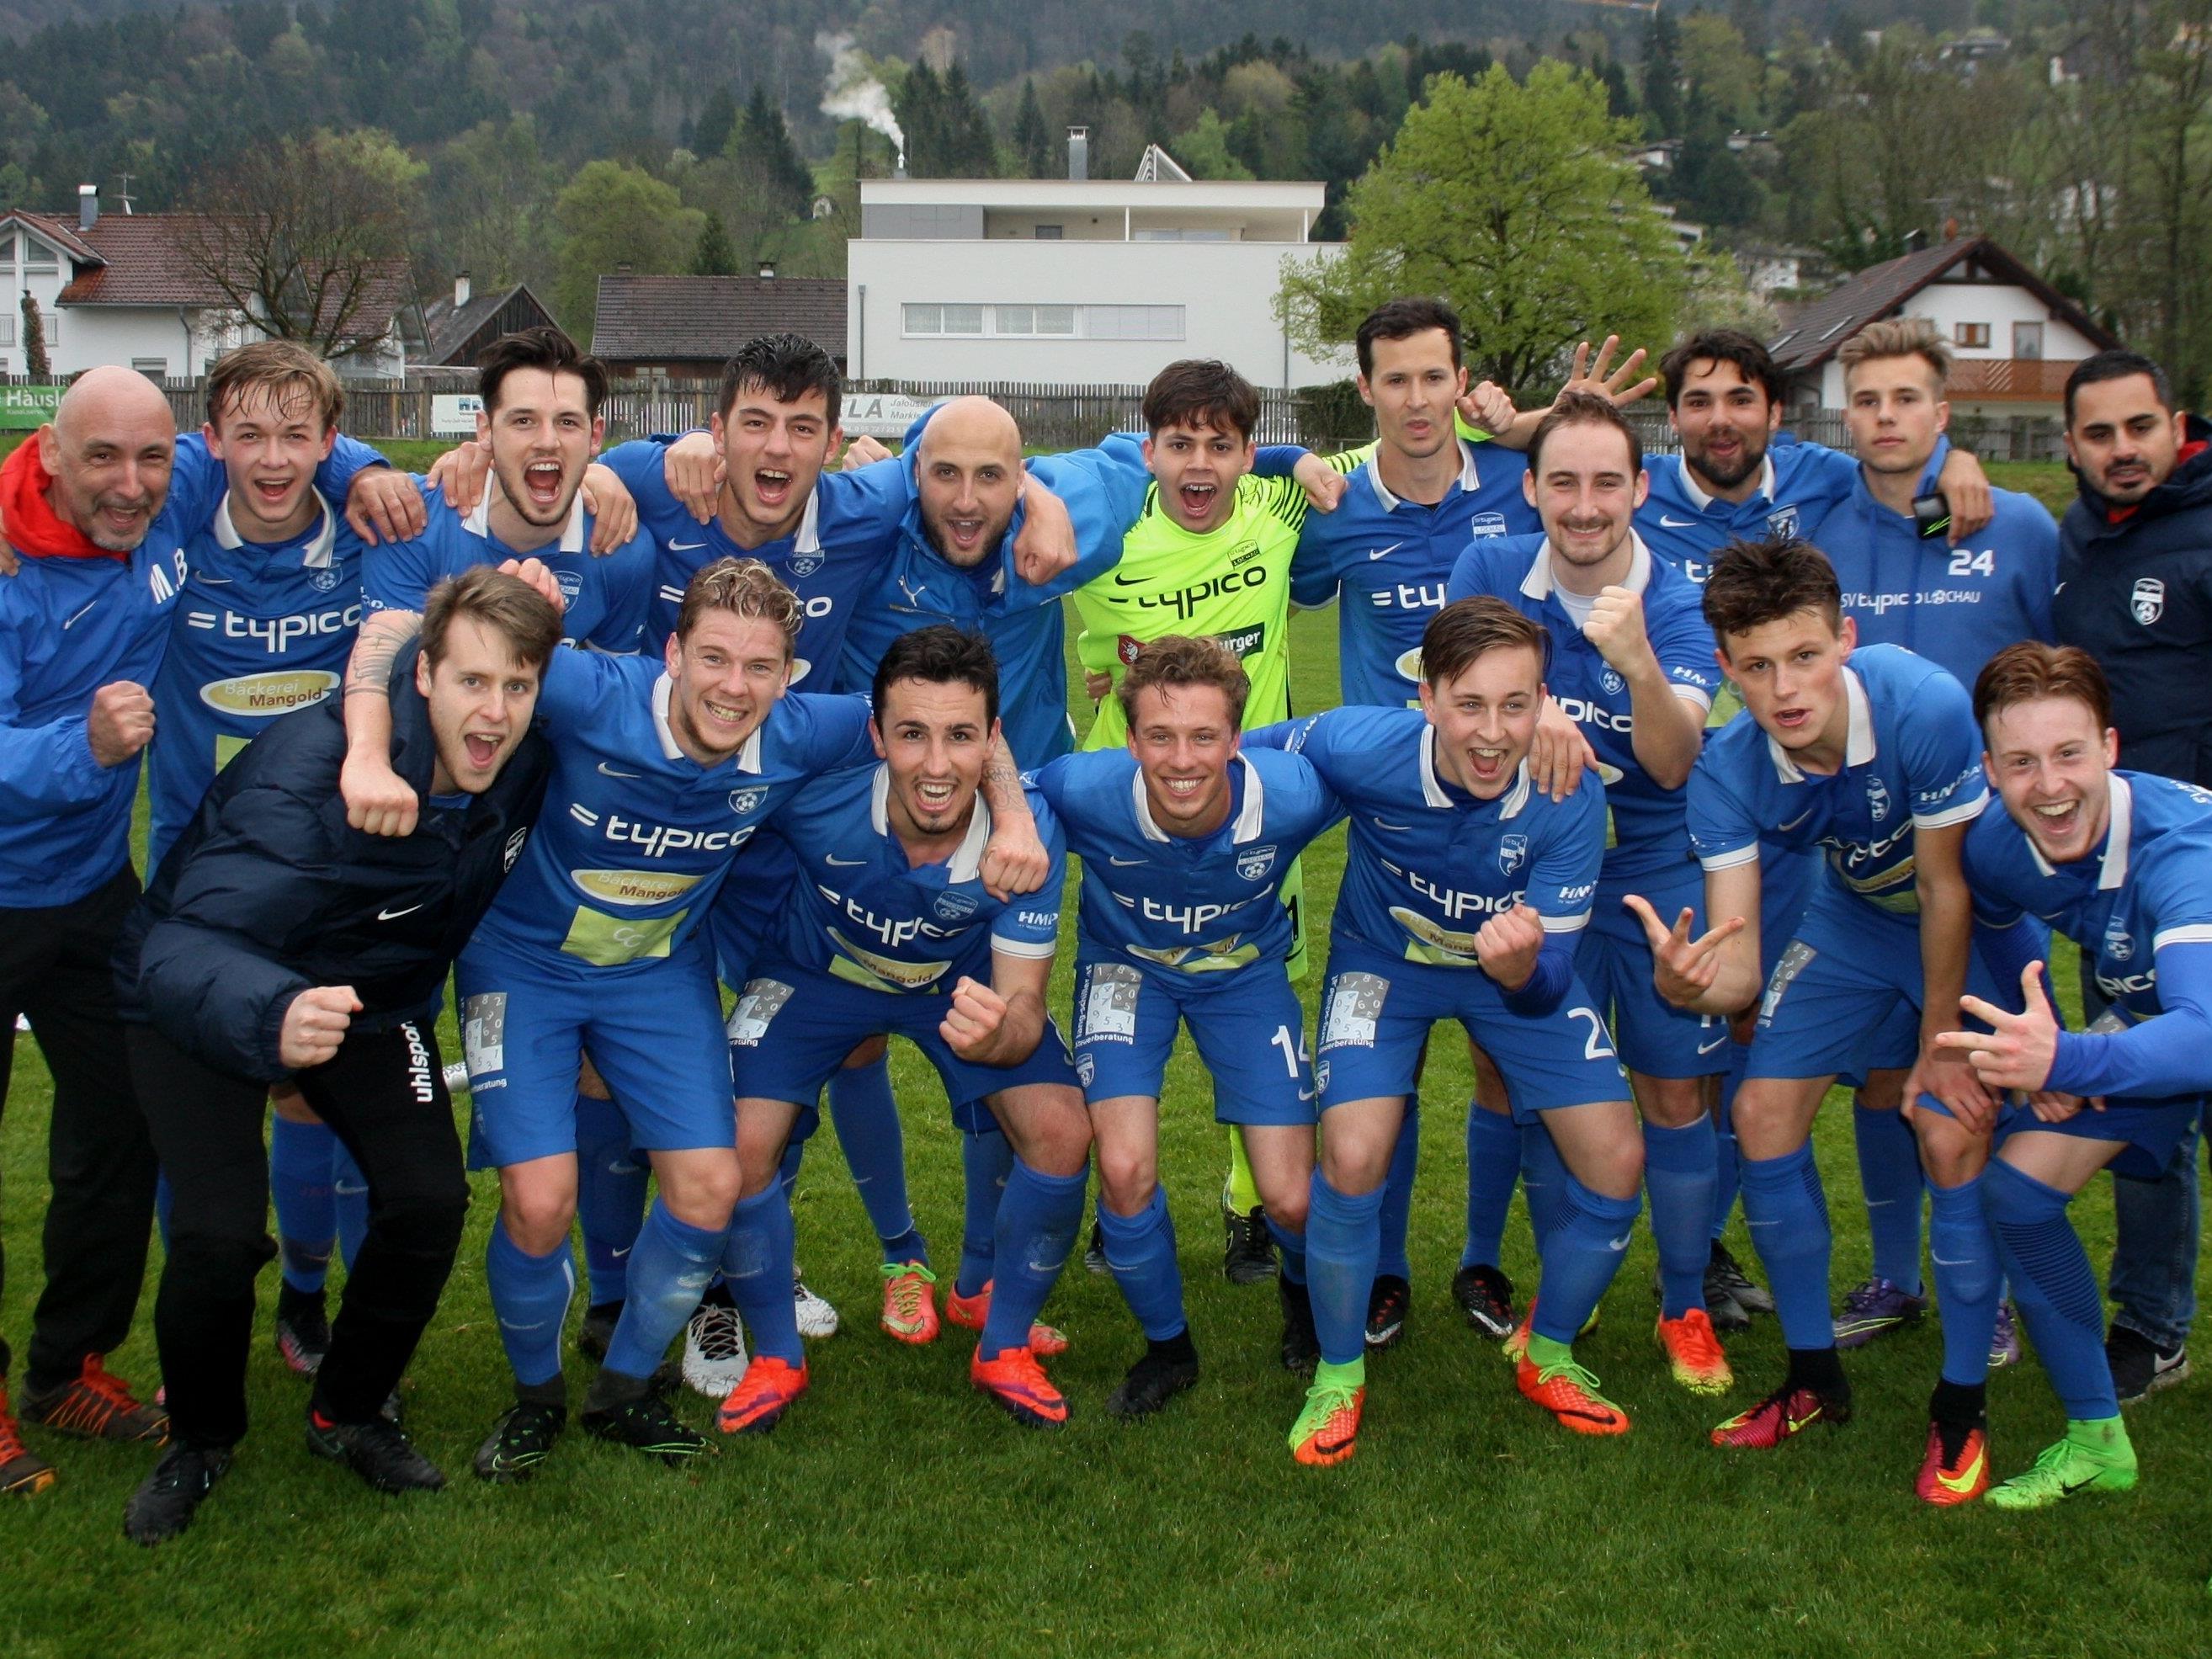 Jubelstimmung beim SV Typico Lochau: Fünf Spiele – 15 Punkte – Tabellenplatz 3 in der Landesliga. Die Lochauer sind im Frühjahr immer noch ungeschlagen.